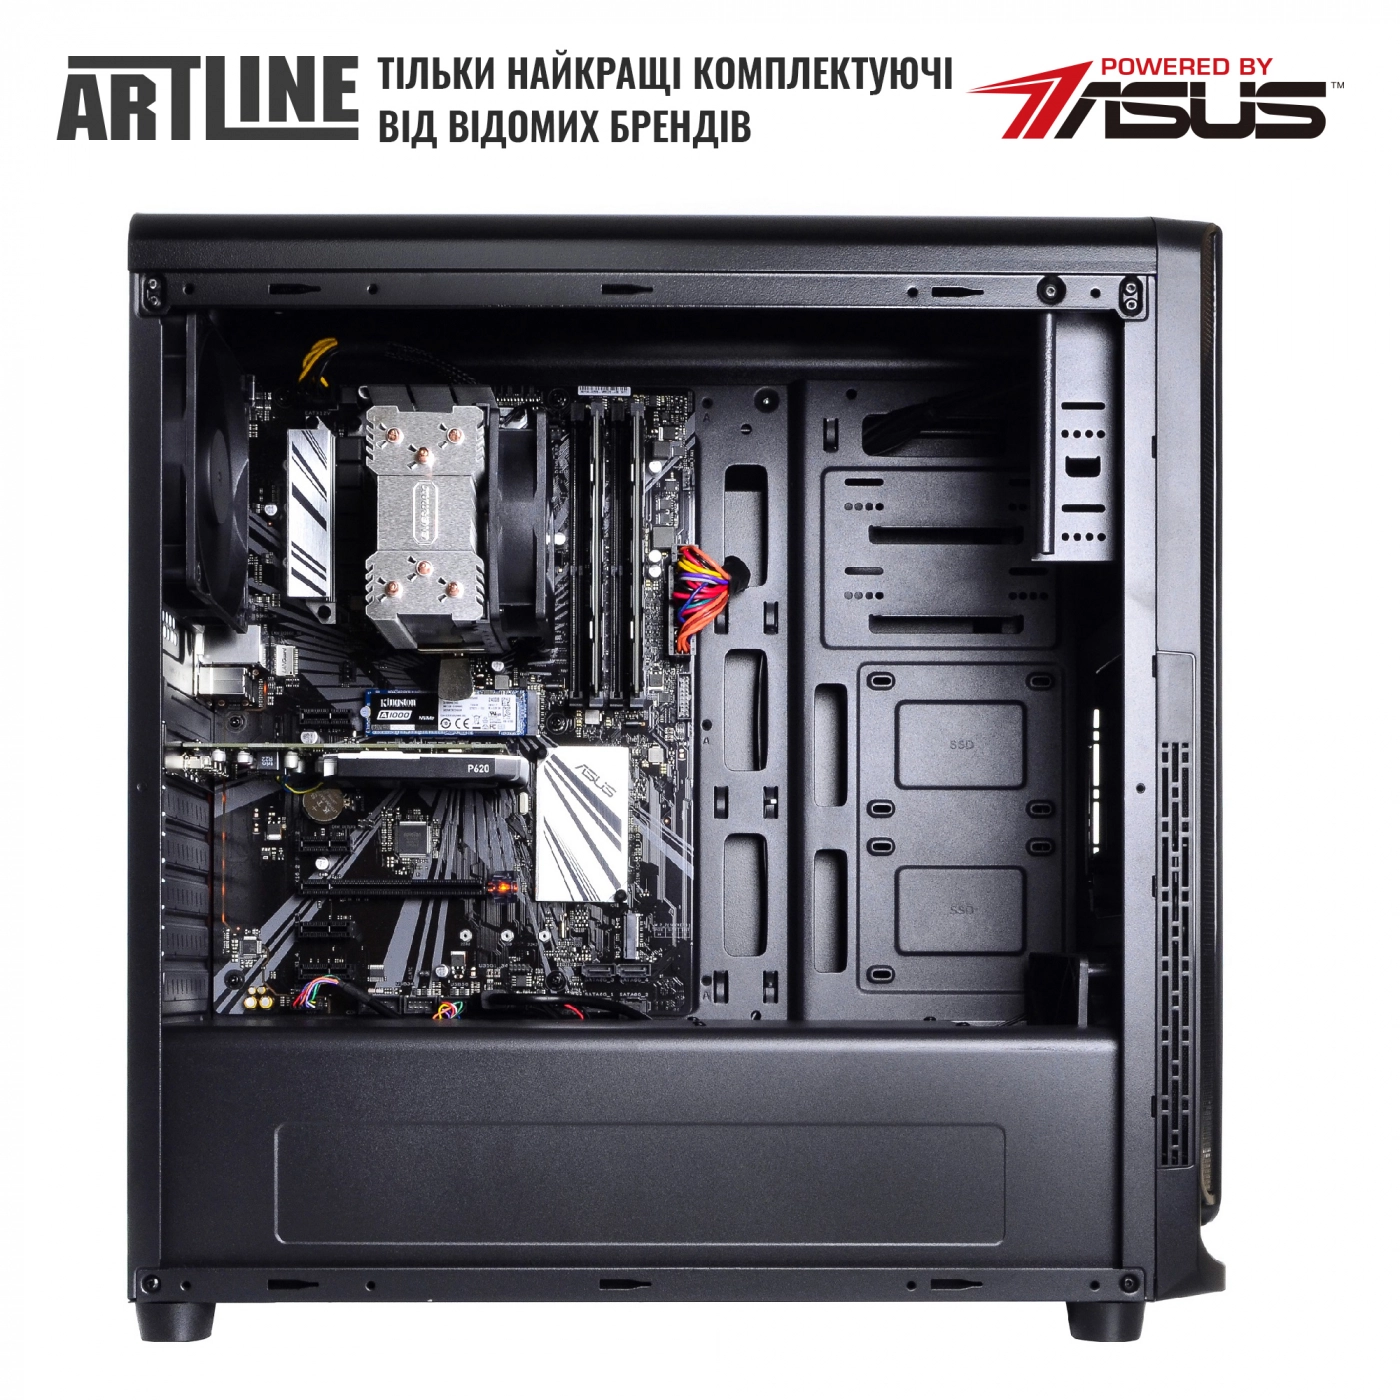 Купить Сервер ARTLINE Business T25v25 - фото 5